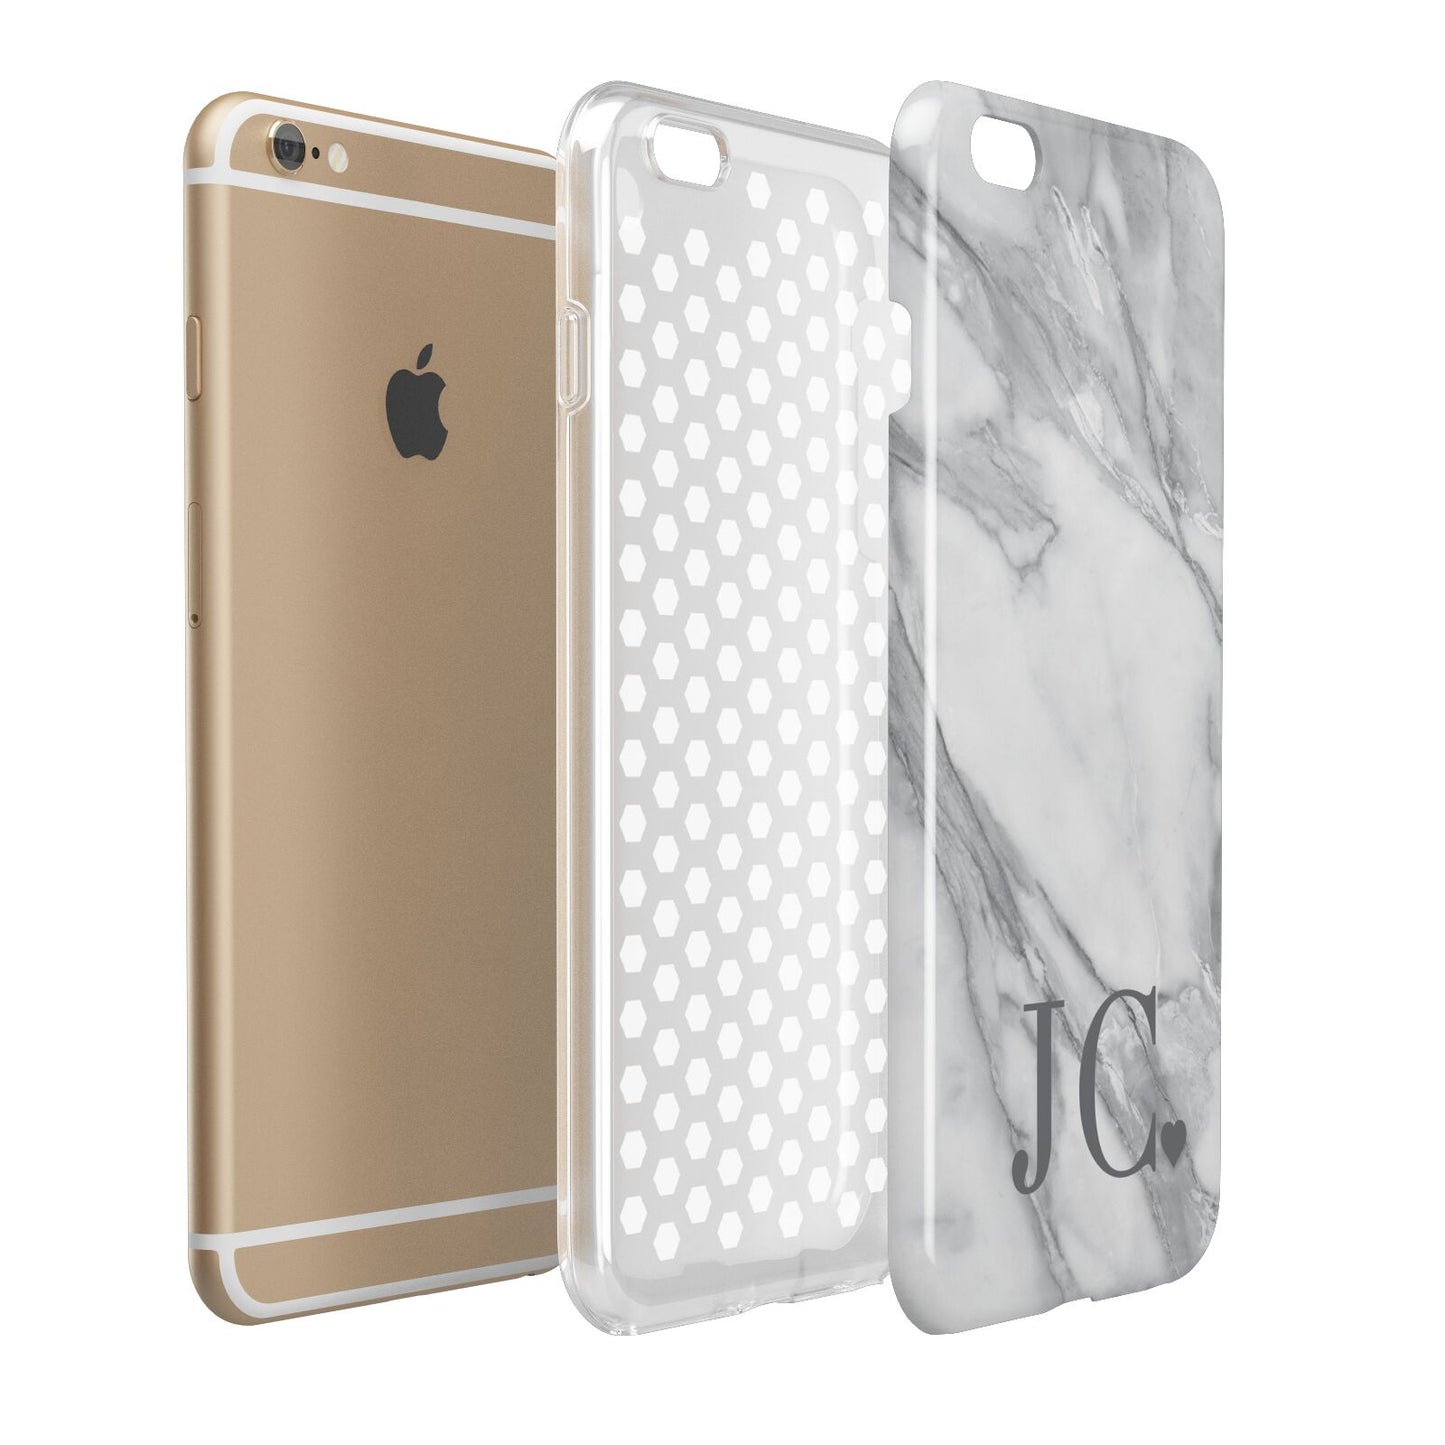 Initials Love Heart Apple iPhone 6 Plus 3D Tough Case Expand Detail Image